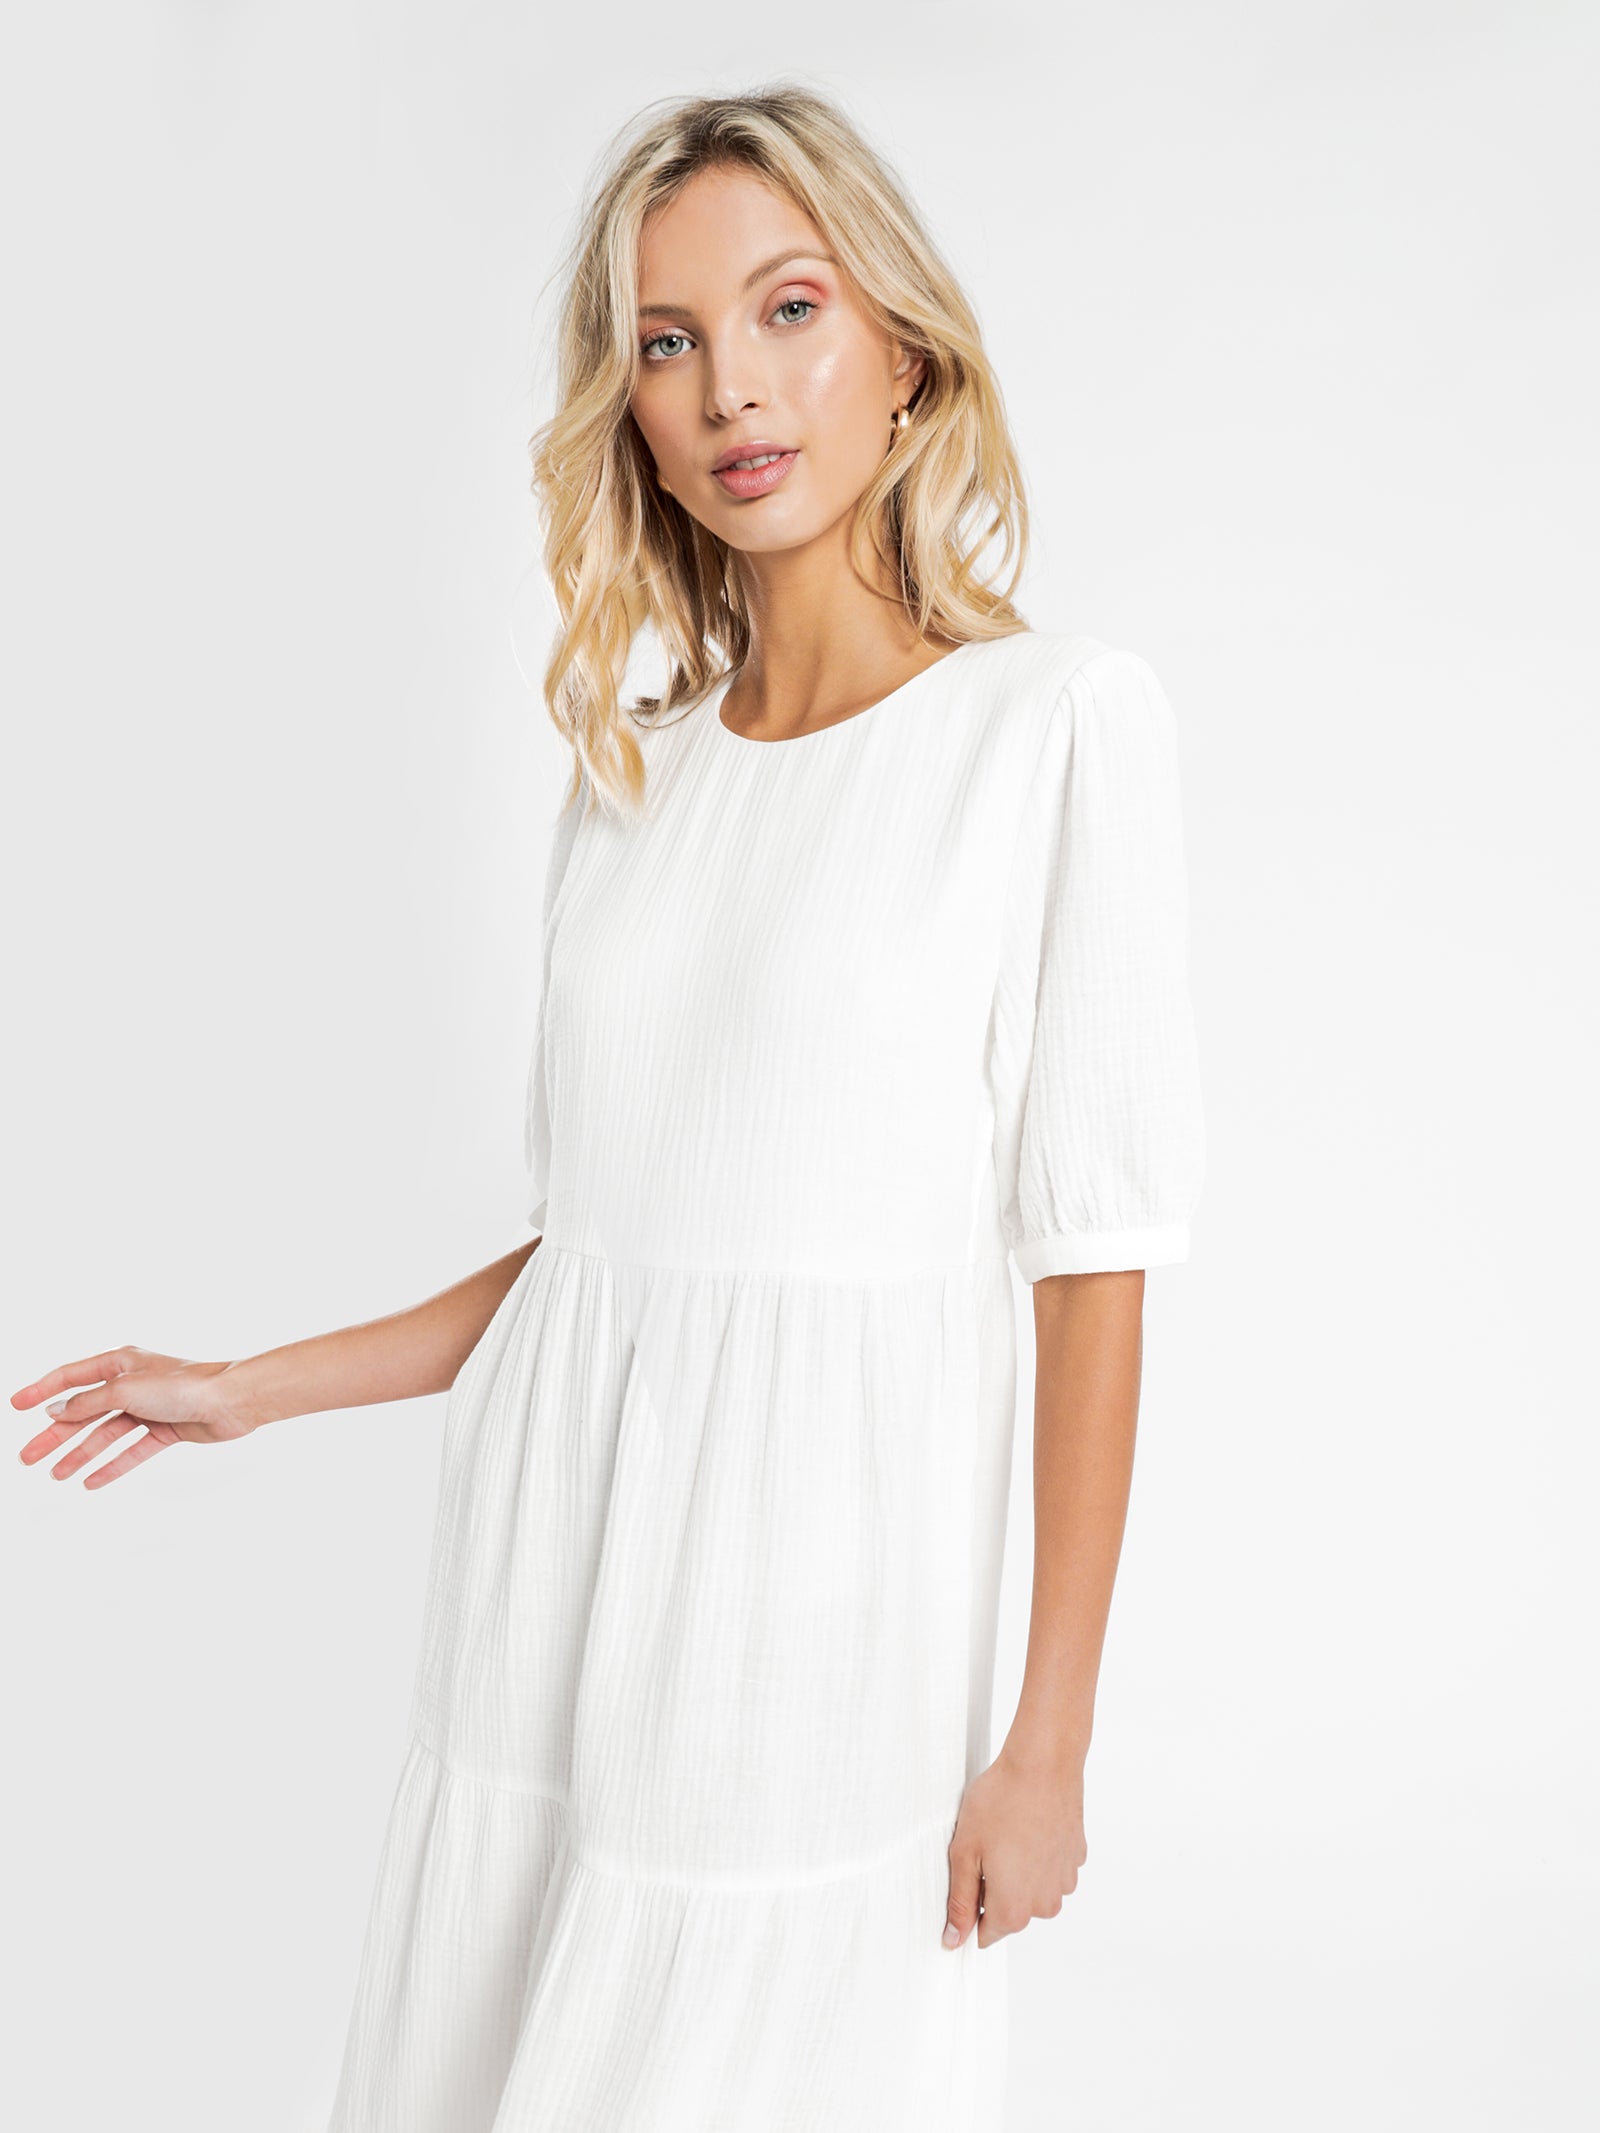 Verona Tier Maxi Dress in White - Glue Store